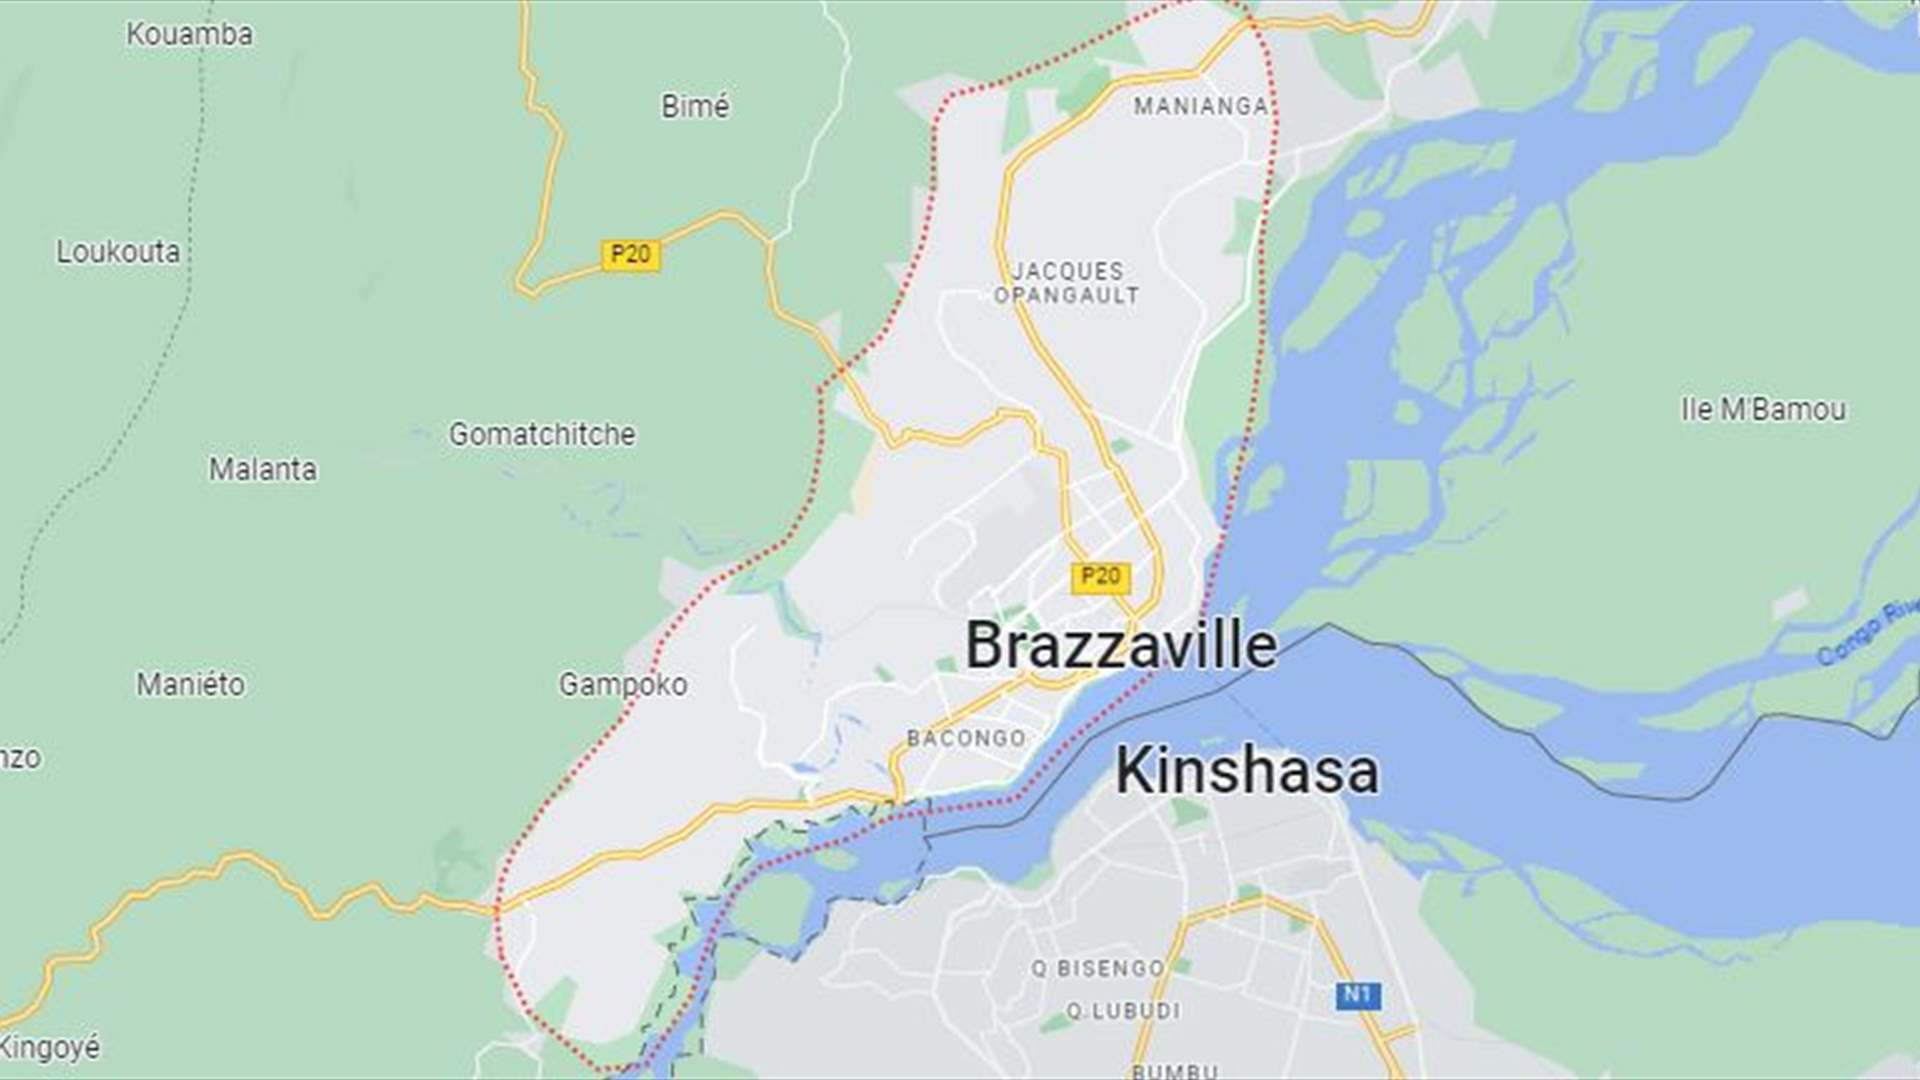 اخبار كاذبة عن وقوع أحداث خطيرة في برازافيل - الكونغو